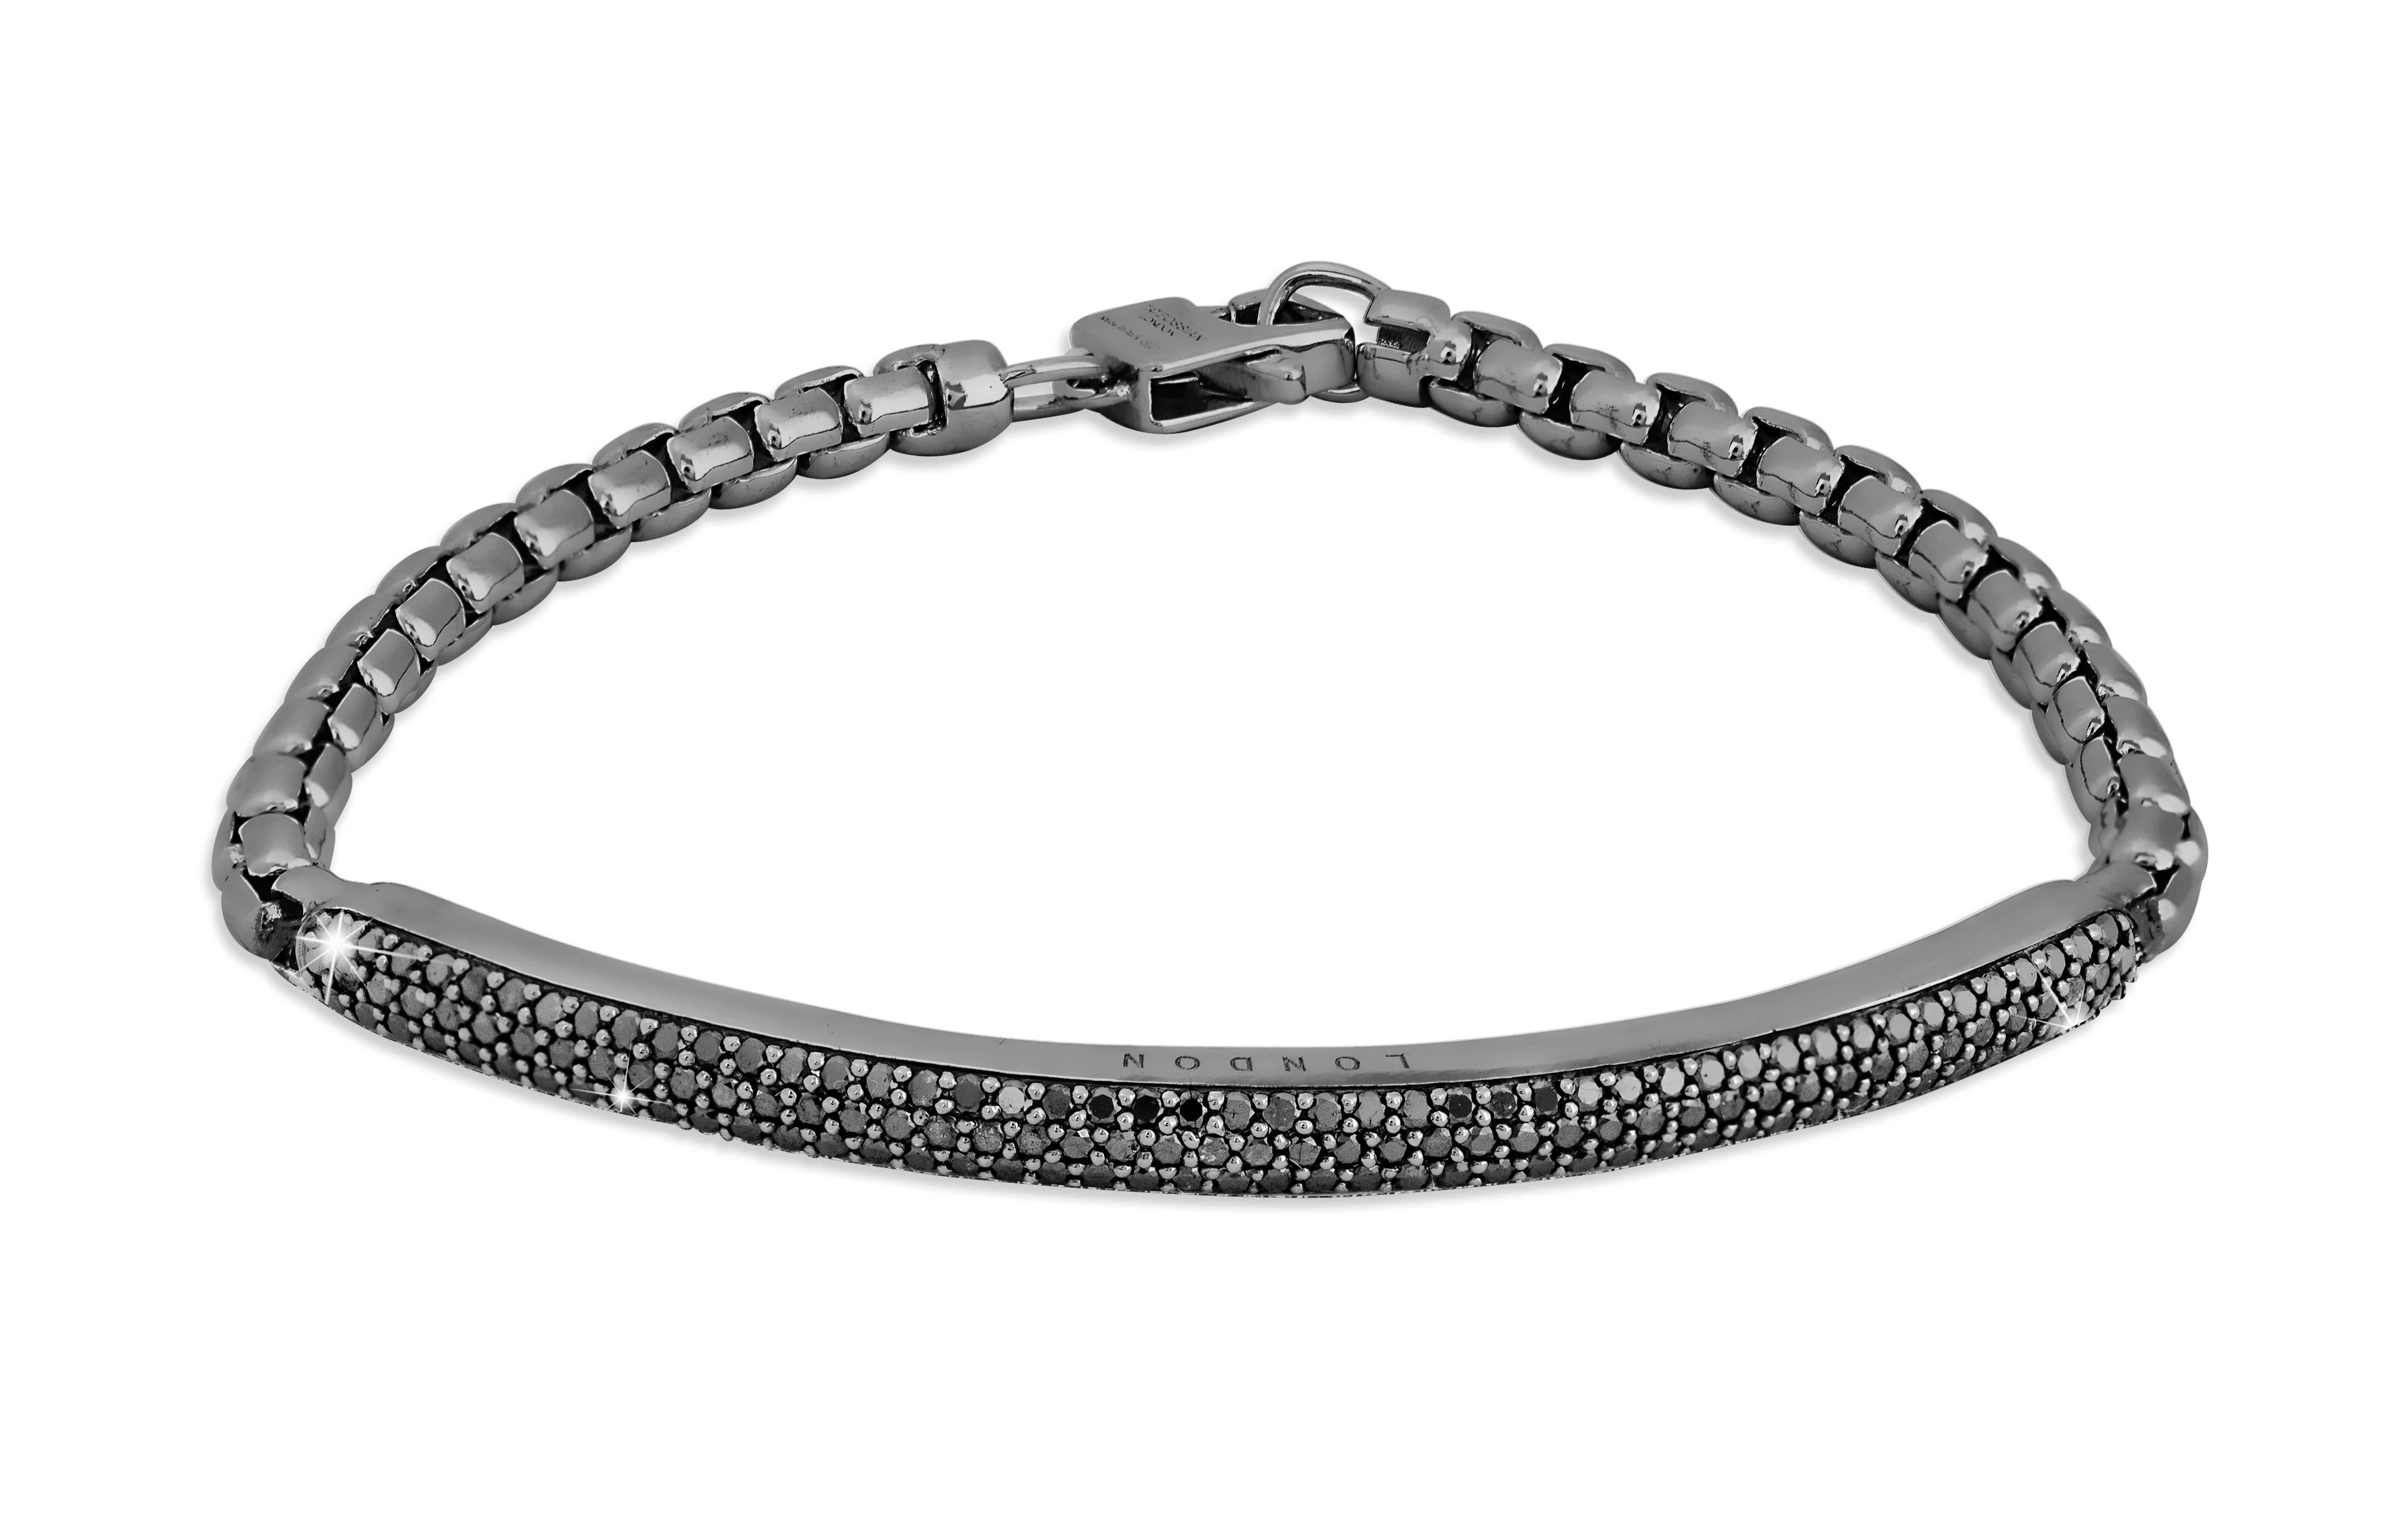 Bracelet Windsor en argent sterling plaqué rhodium noir avec diamants noirs, taille M

Ce bracelet comporte une barrette d'identification en argent sterling sertie d'une surface pavée de 139 diamants noirs. Toutes les pierres précieuses sont